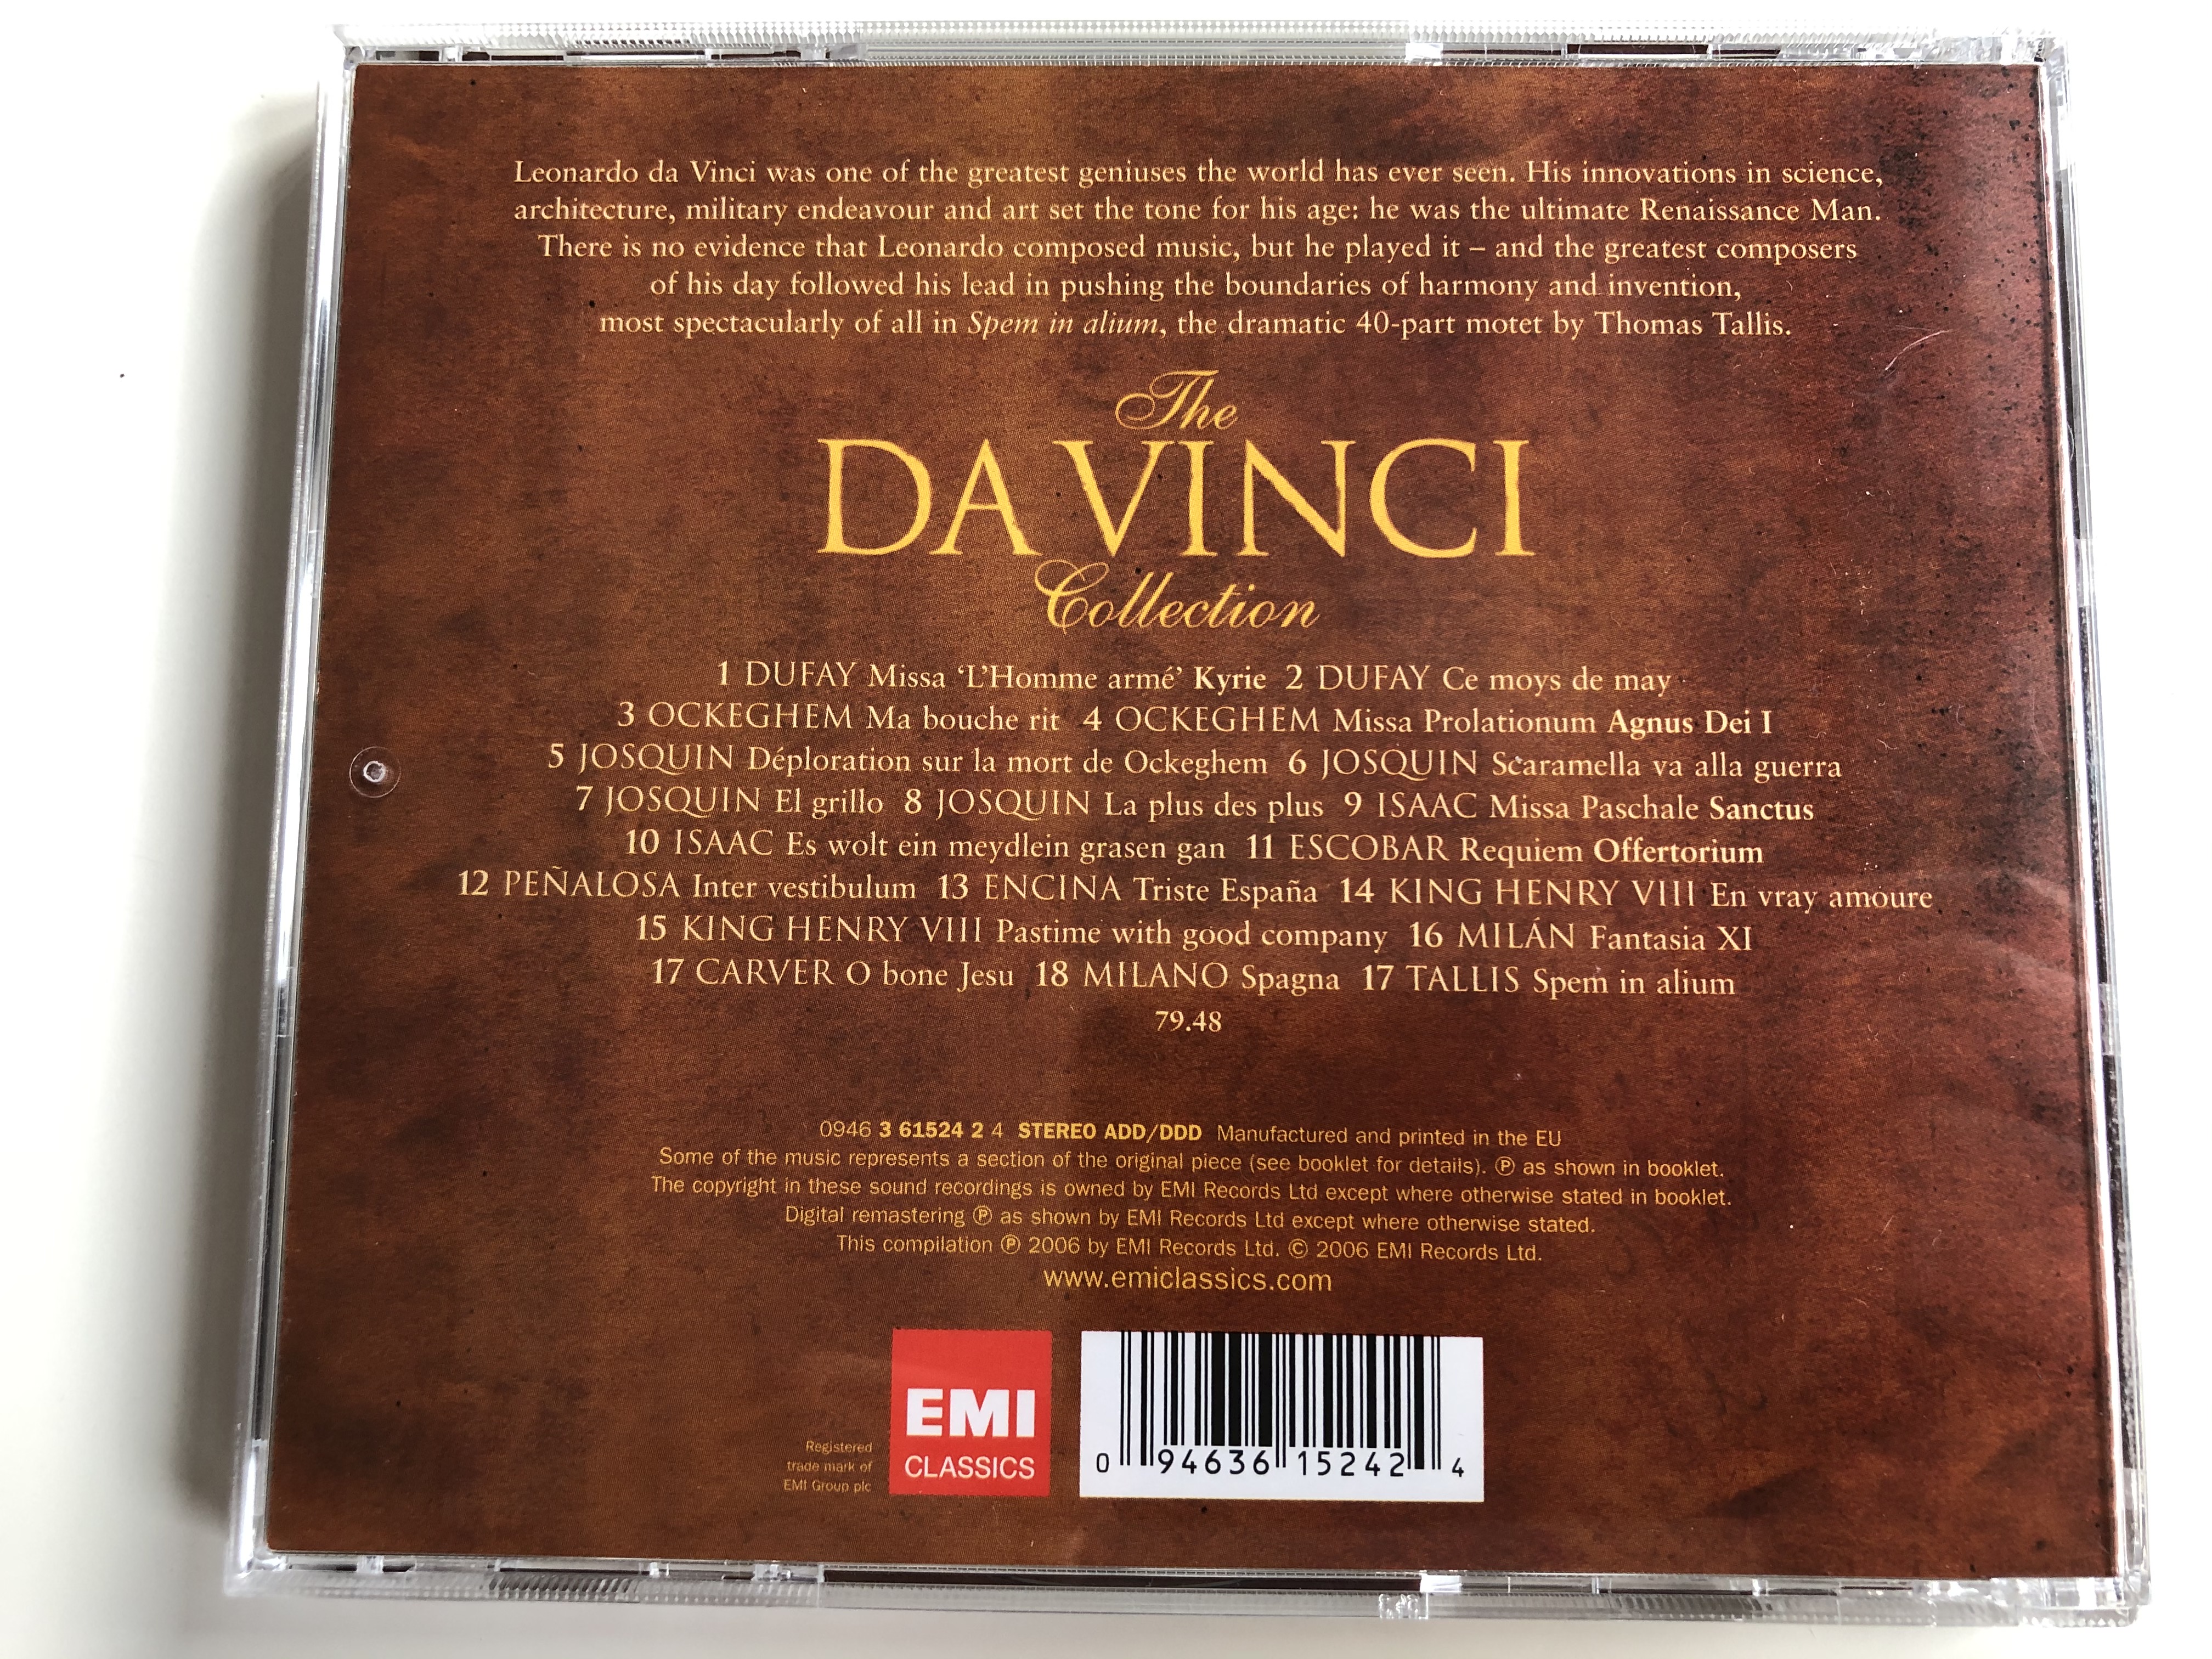 the-da-vinci-collection-emi-classics-audio-cd-2006-stereo-0946-3-61524-2-4-7-.jpg